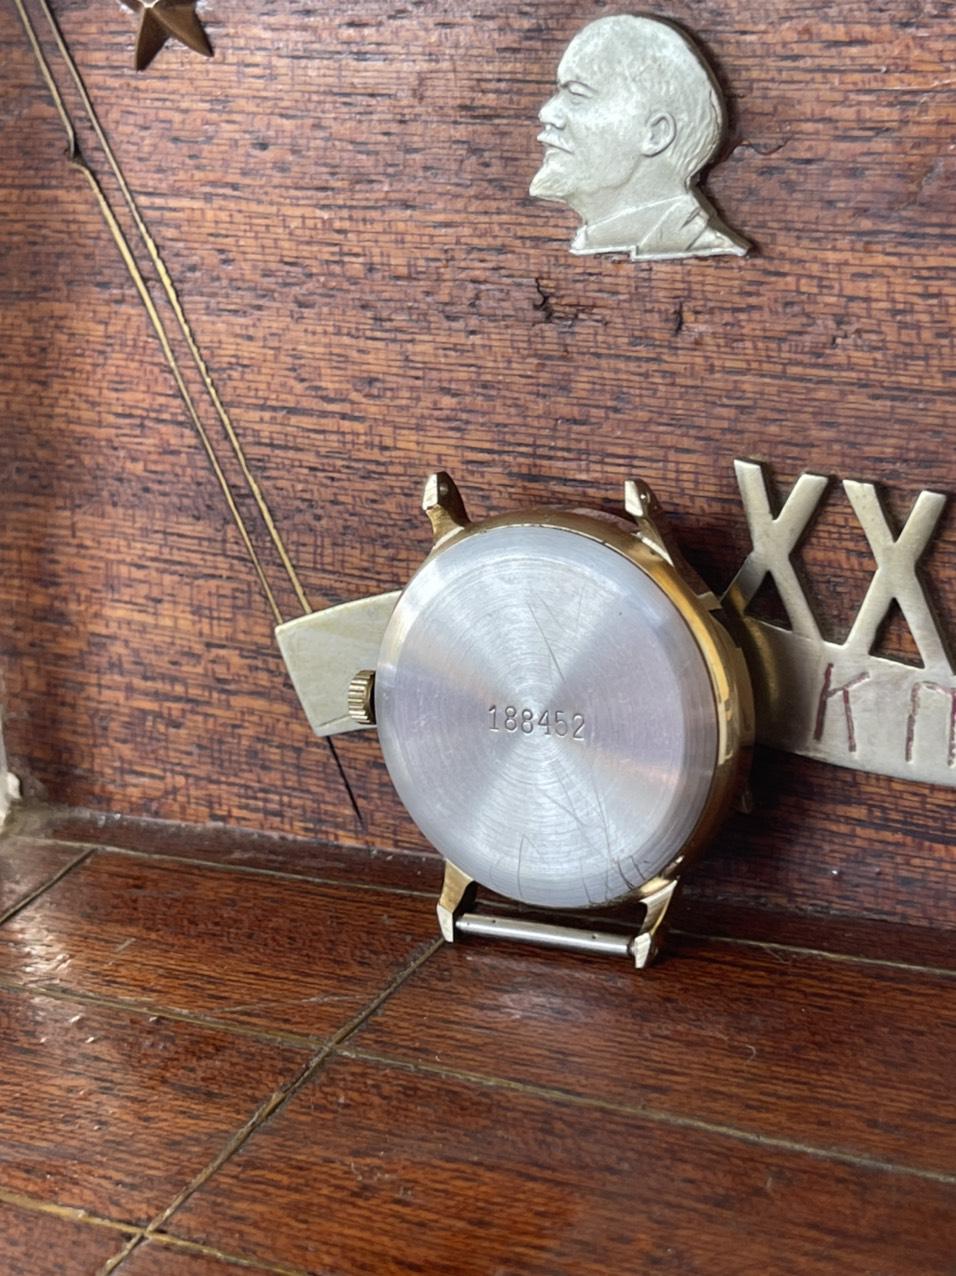 Vỏ đồng hồ nga cổ  nguyên rin nguyên bản, hoạt động ổn định, đầy đủ sổ hộp, giá trị sưu tầm cao